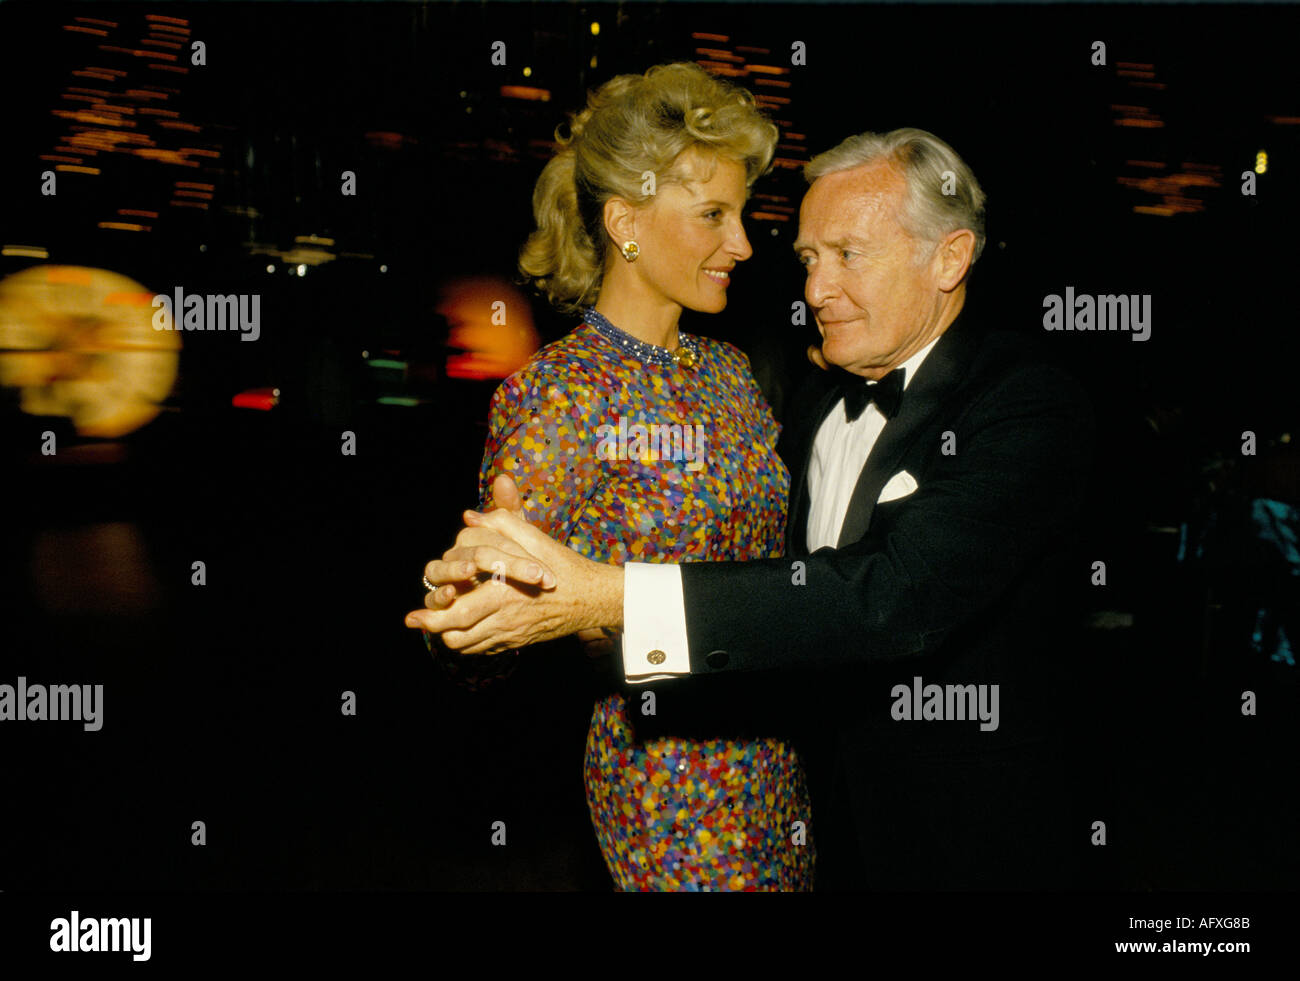 La Principessa Michael di Kent ballando con valutazione a parte in un Hotel Hilton London circa 1985. Evento di beneficenza Foto Stock